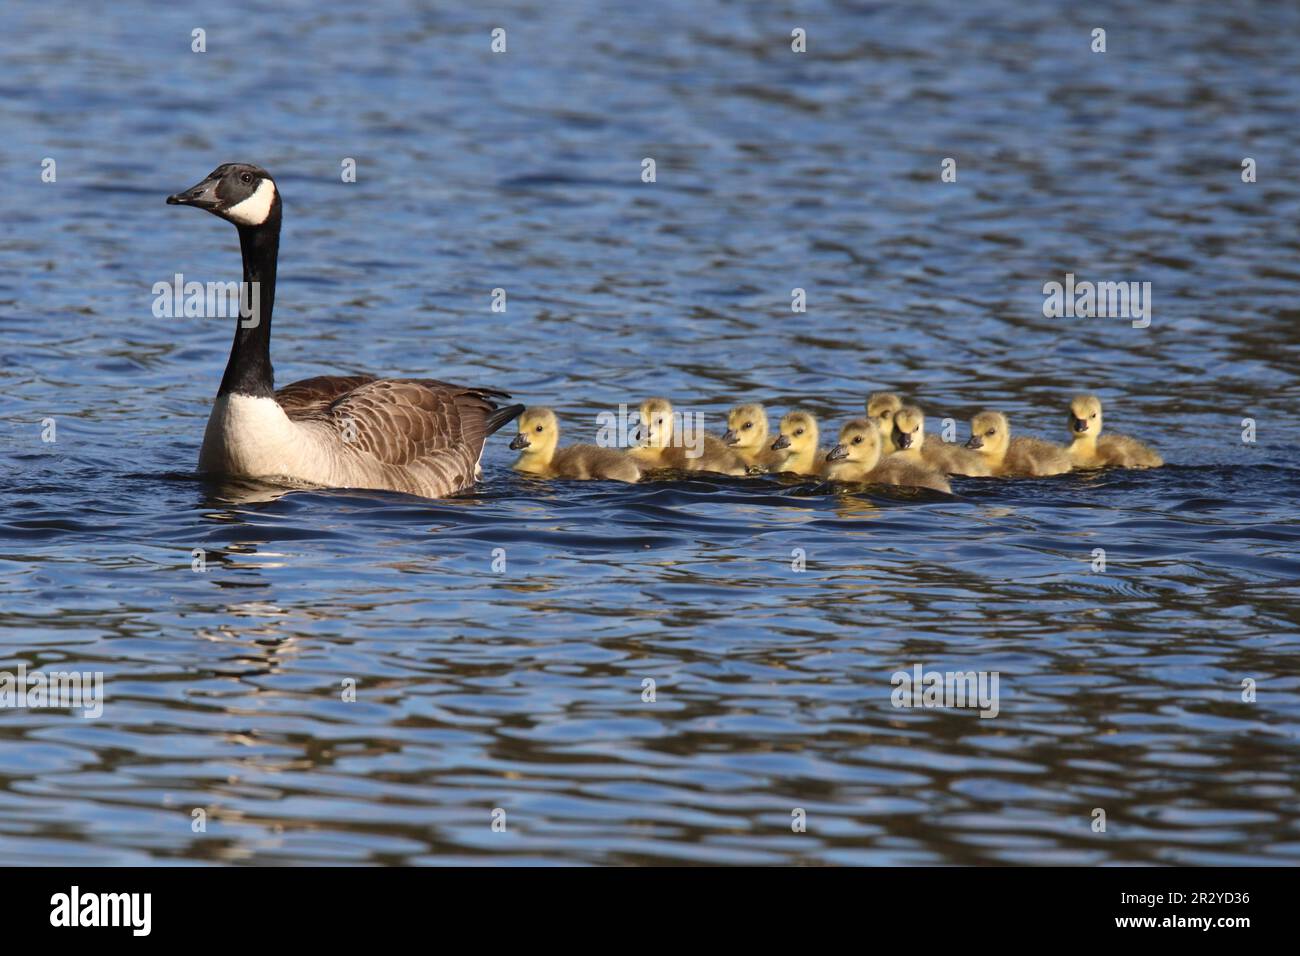 Familia de ganso de Canadá de nueve goslings nadando en una línea detrás del ganso padre Foto de stock